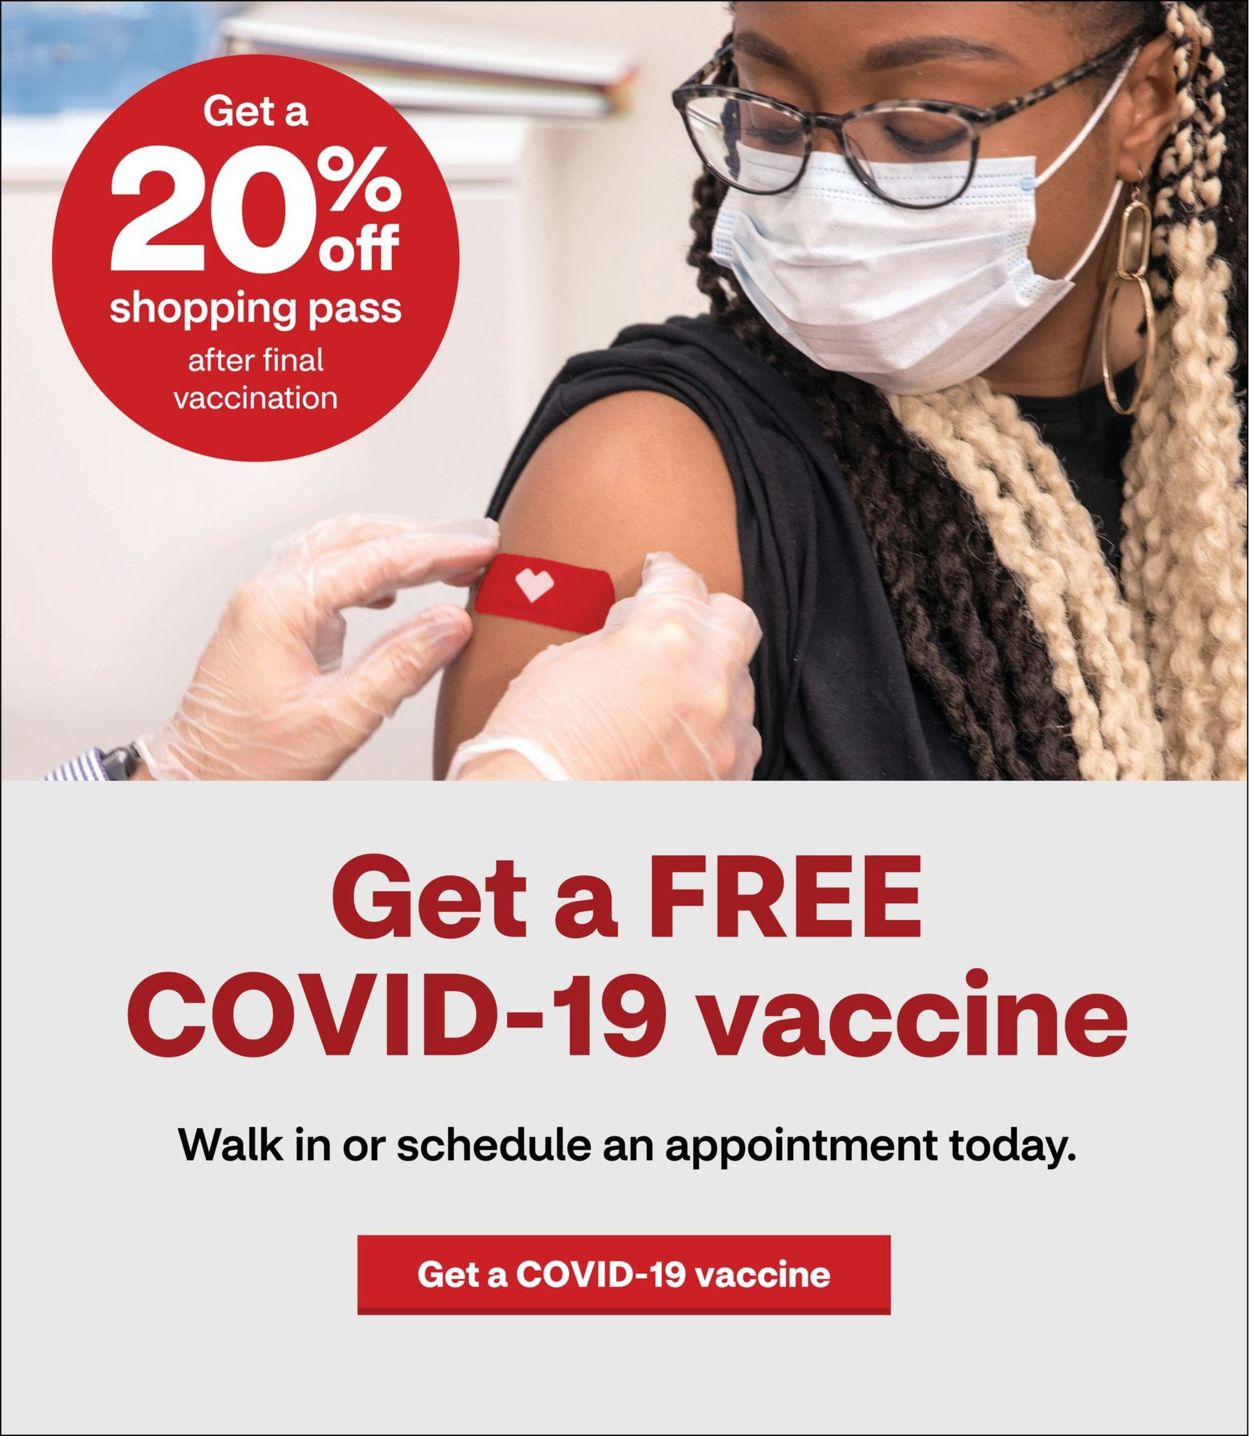 CVS Pharmacy Ad from 05/30/2021